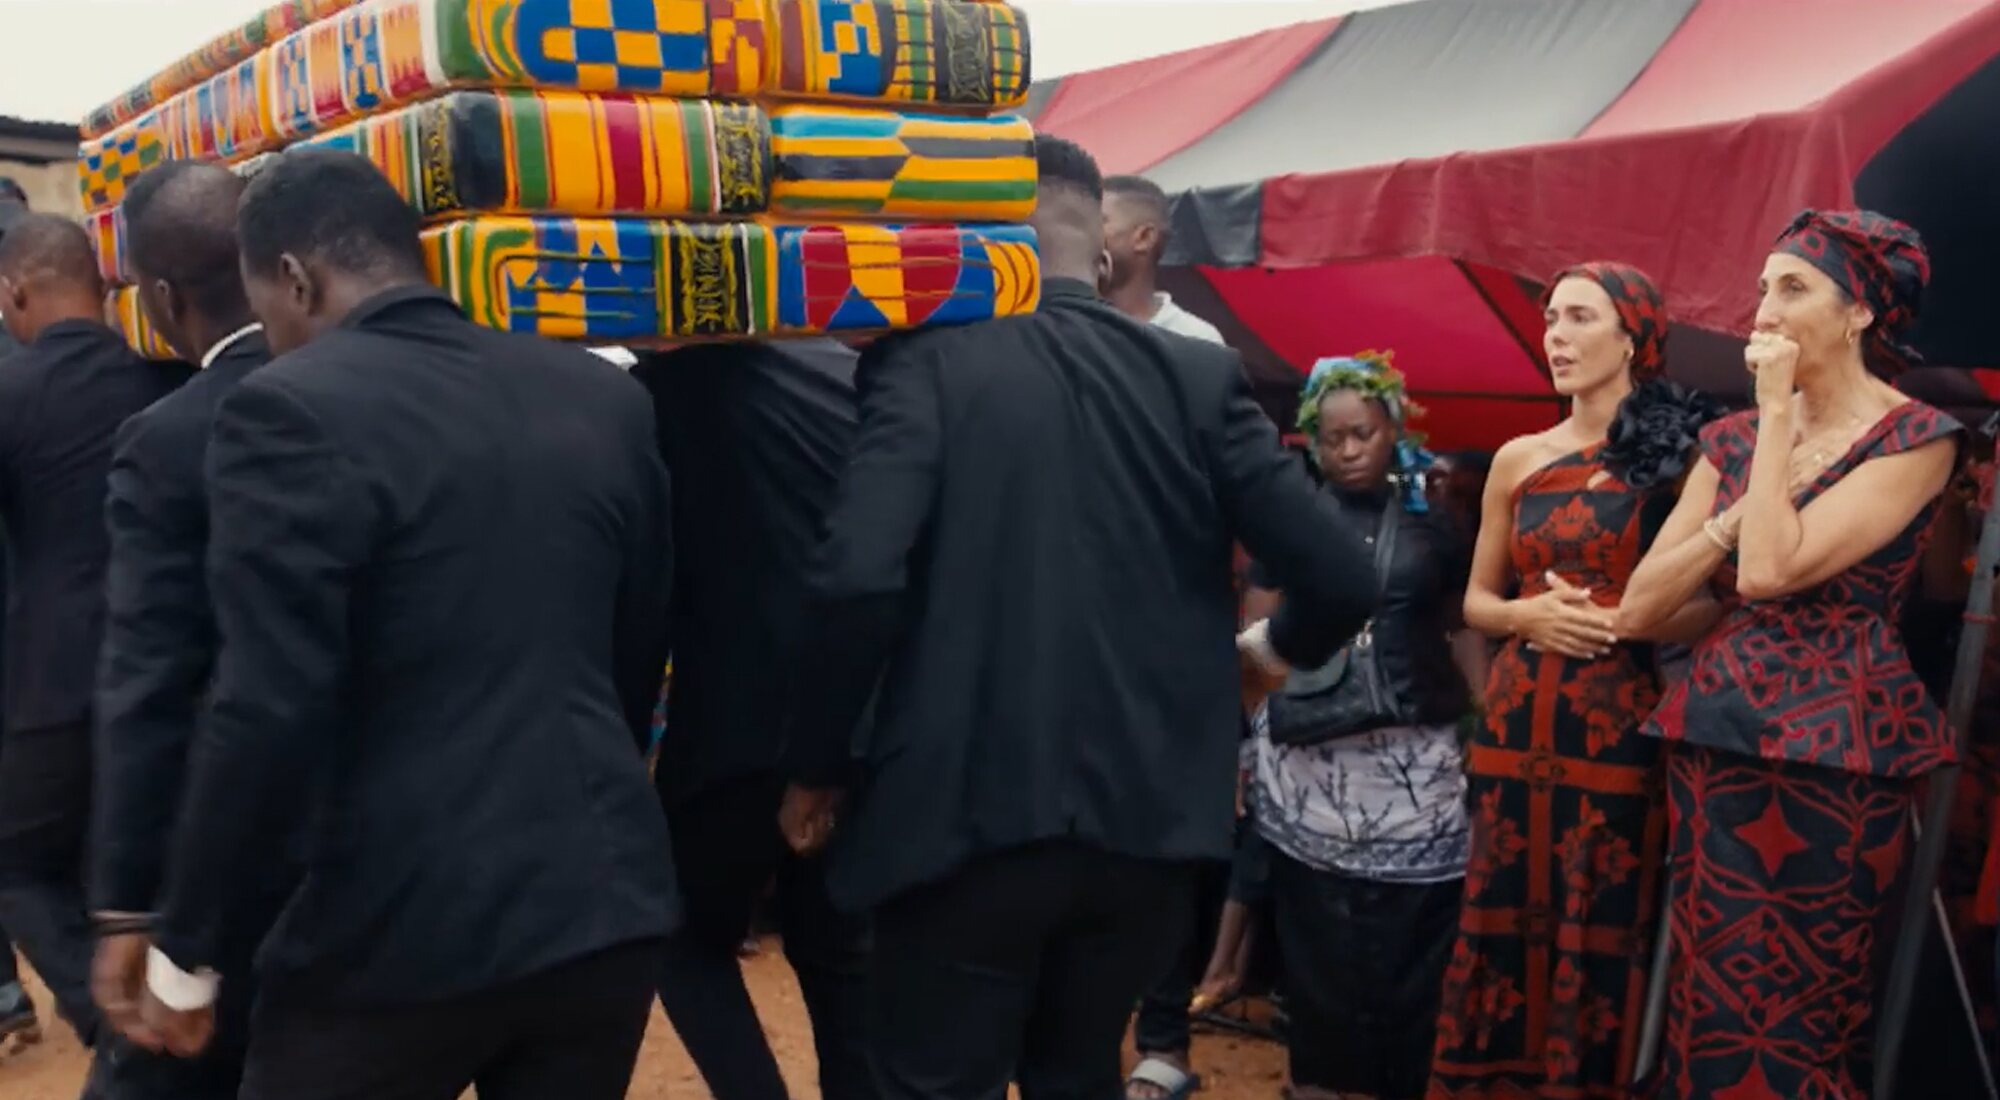 Paz Padilla y Anna Ferrer acuden a un funeral ghanés en 'Te falta un viaje'